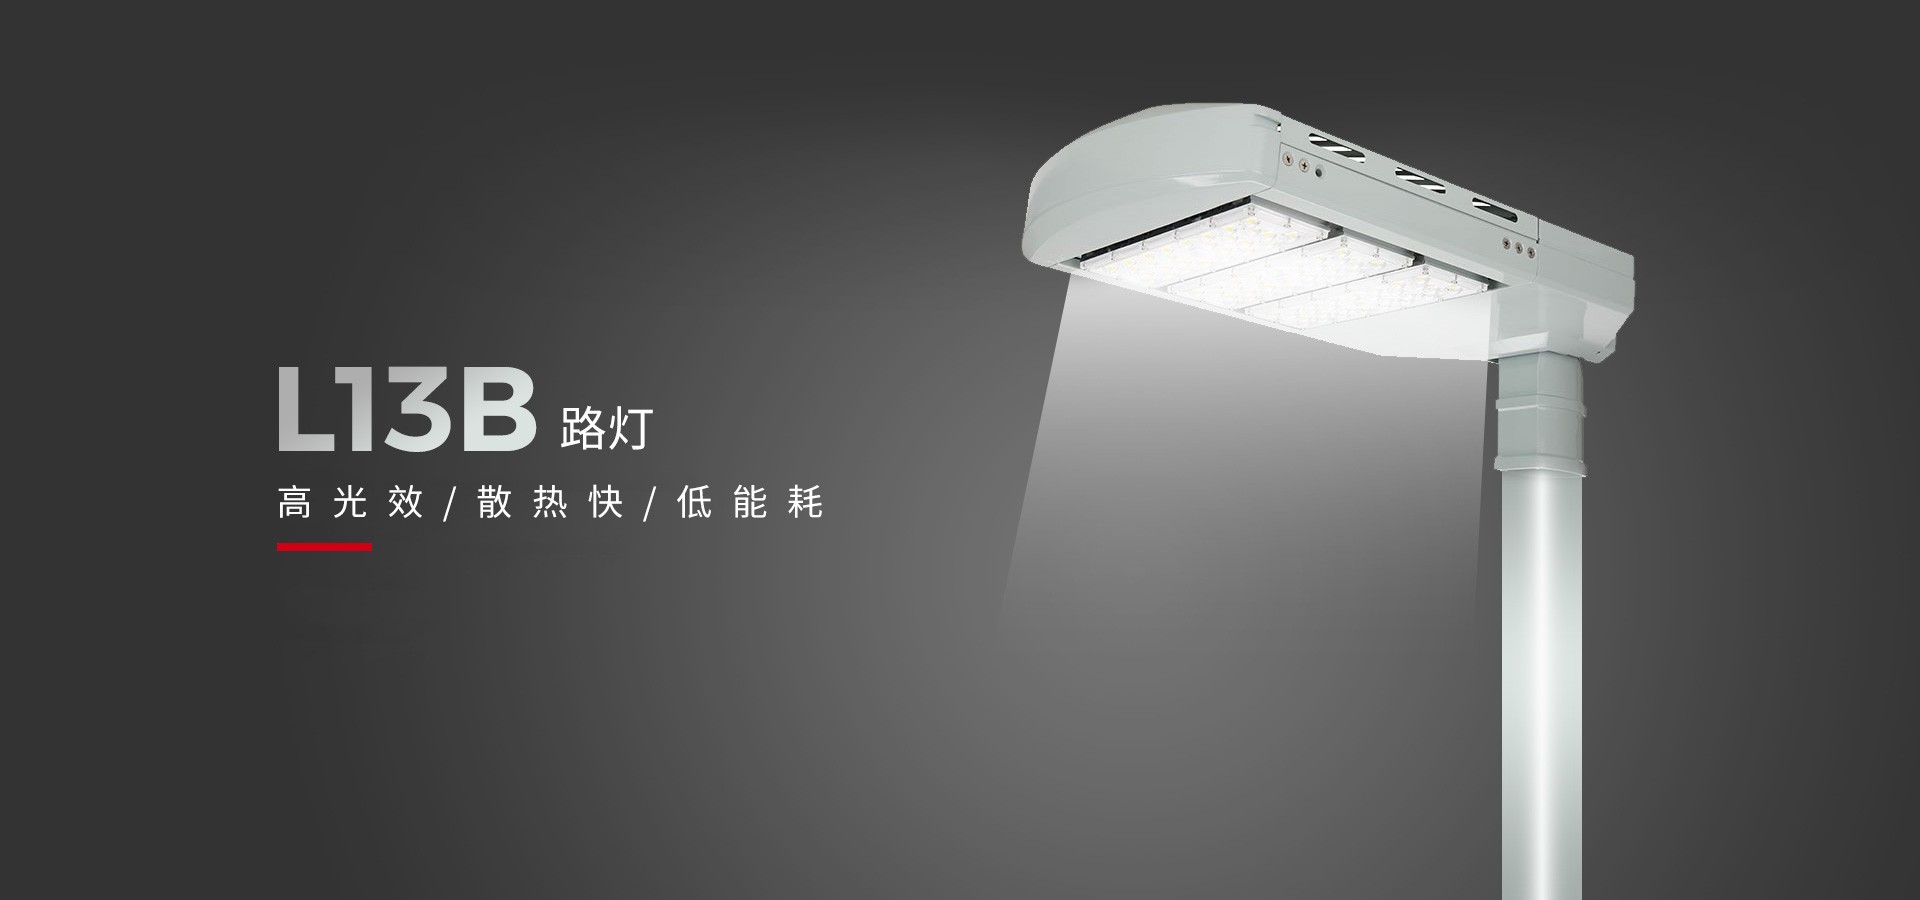 立洋光电 I 节能之光LED路灯L13B 点亮低碳新视界！